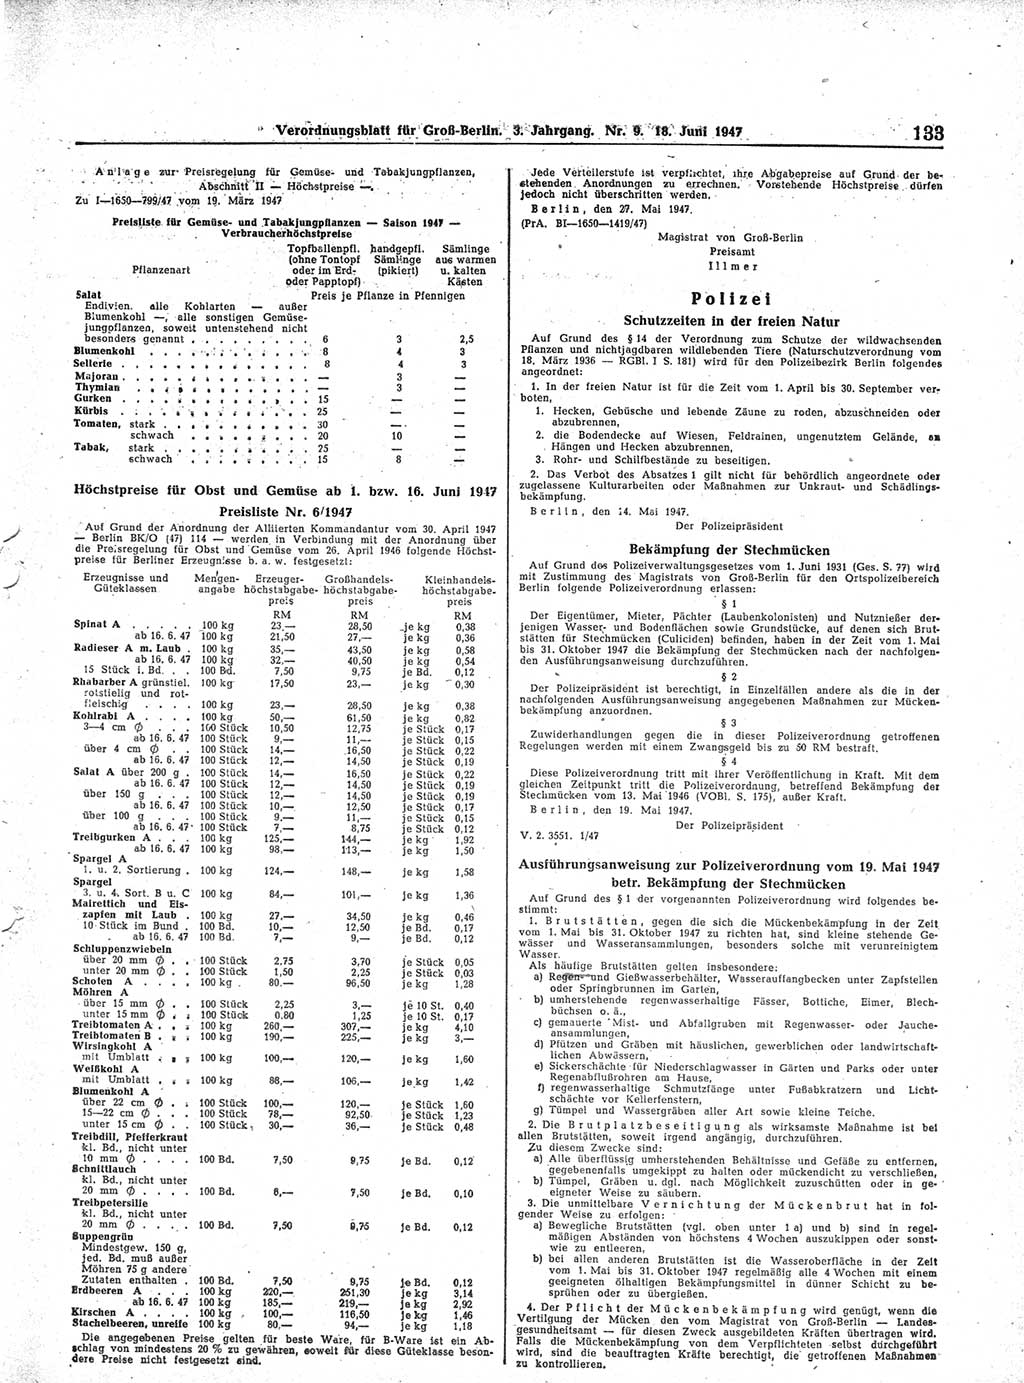 Verordnungsblatt (VOBl.) für Groß-Berlin 1947, Seite 133 (VOBl. Bln. 1947, S. 133)